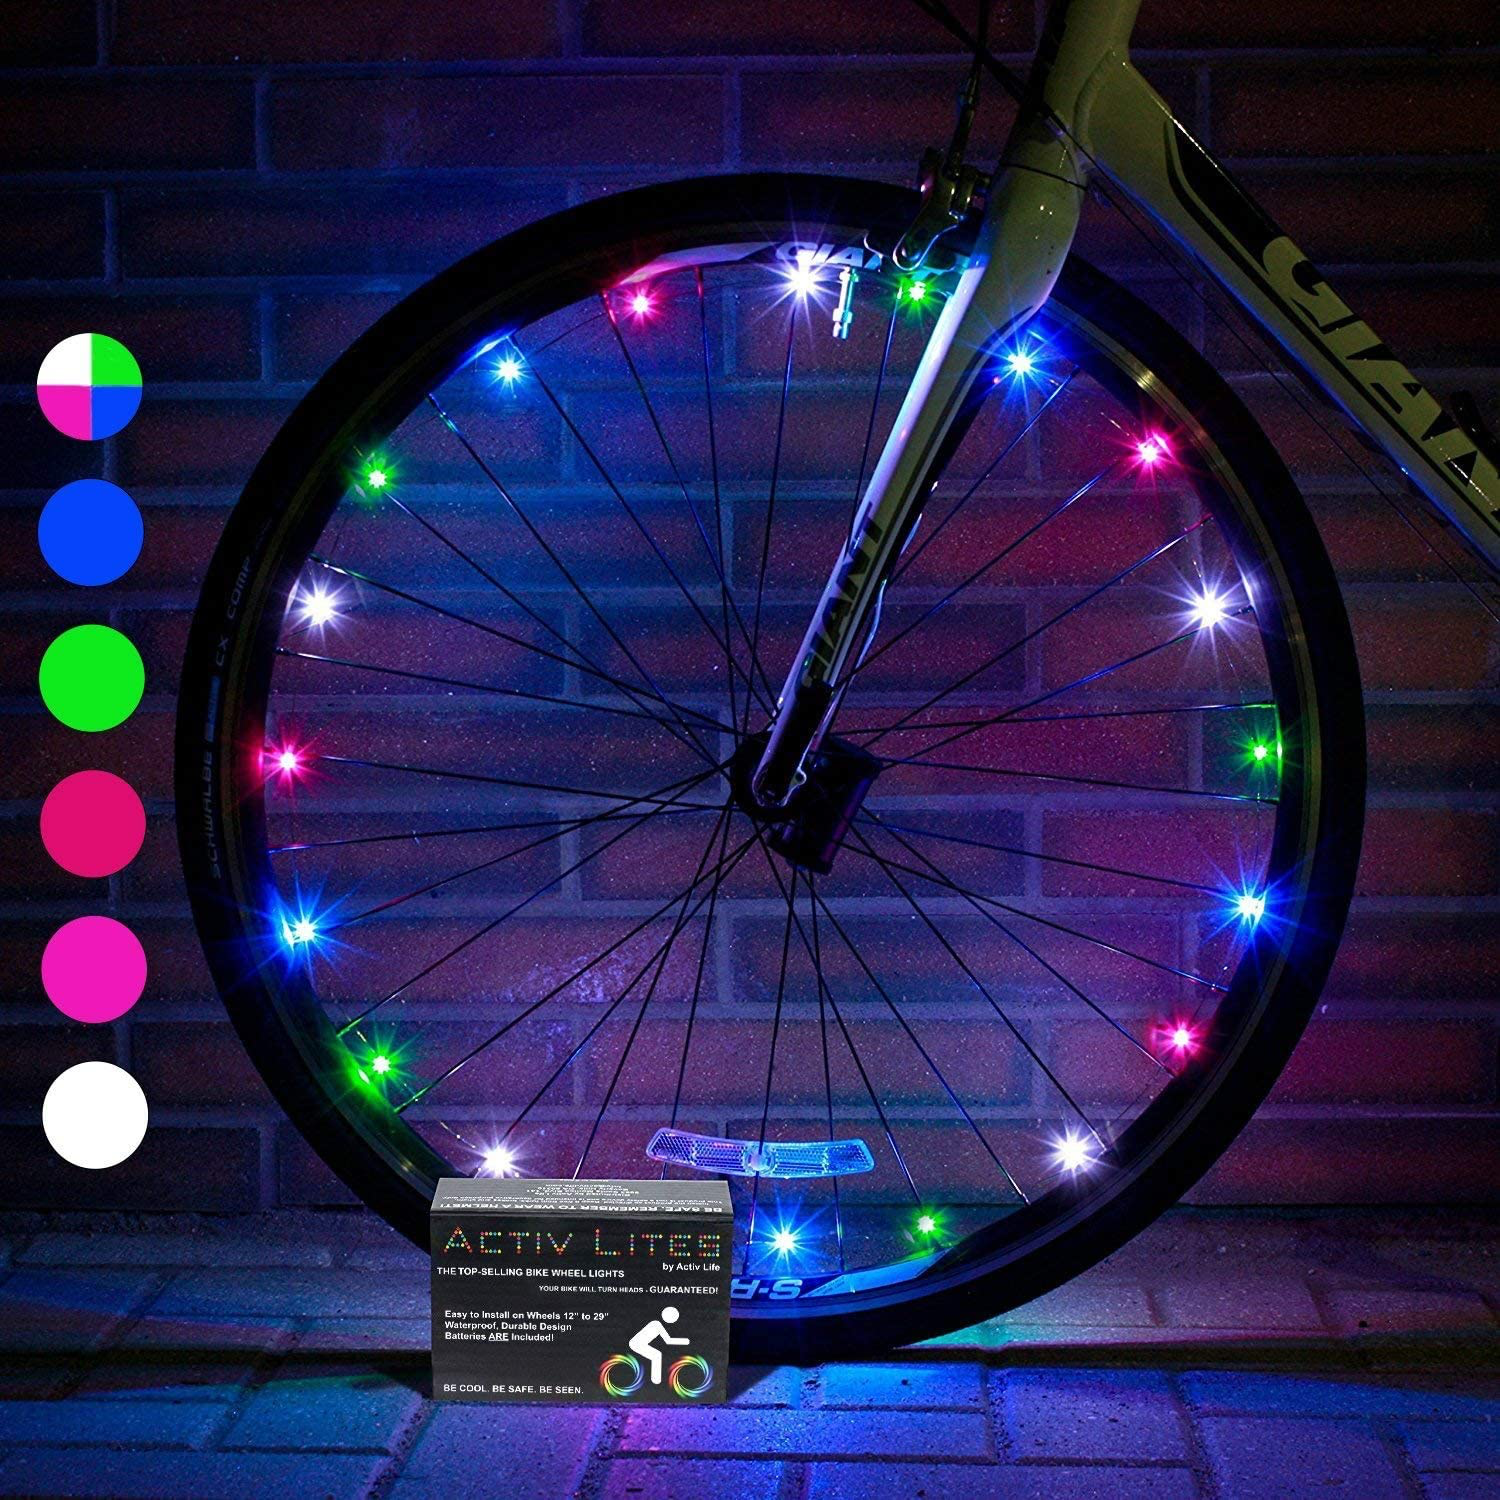 spoke bike lights